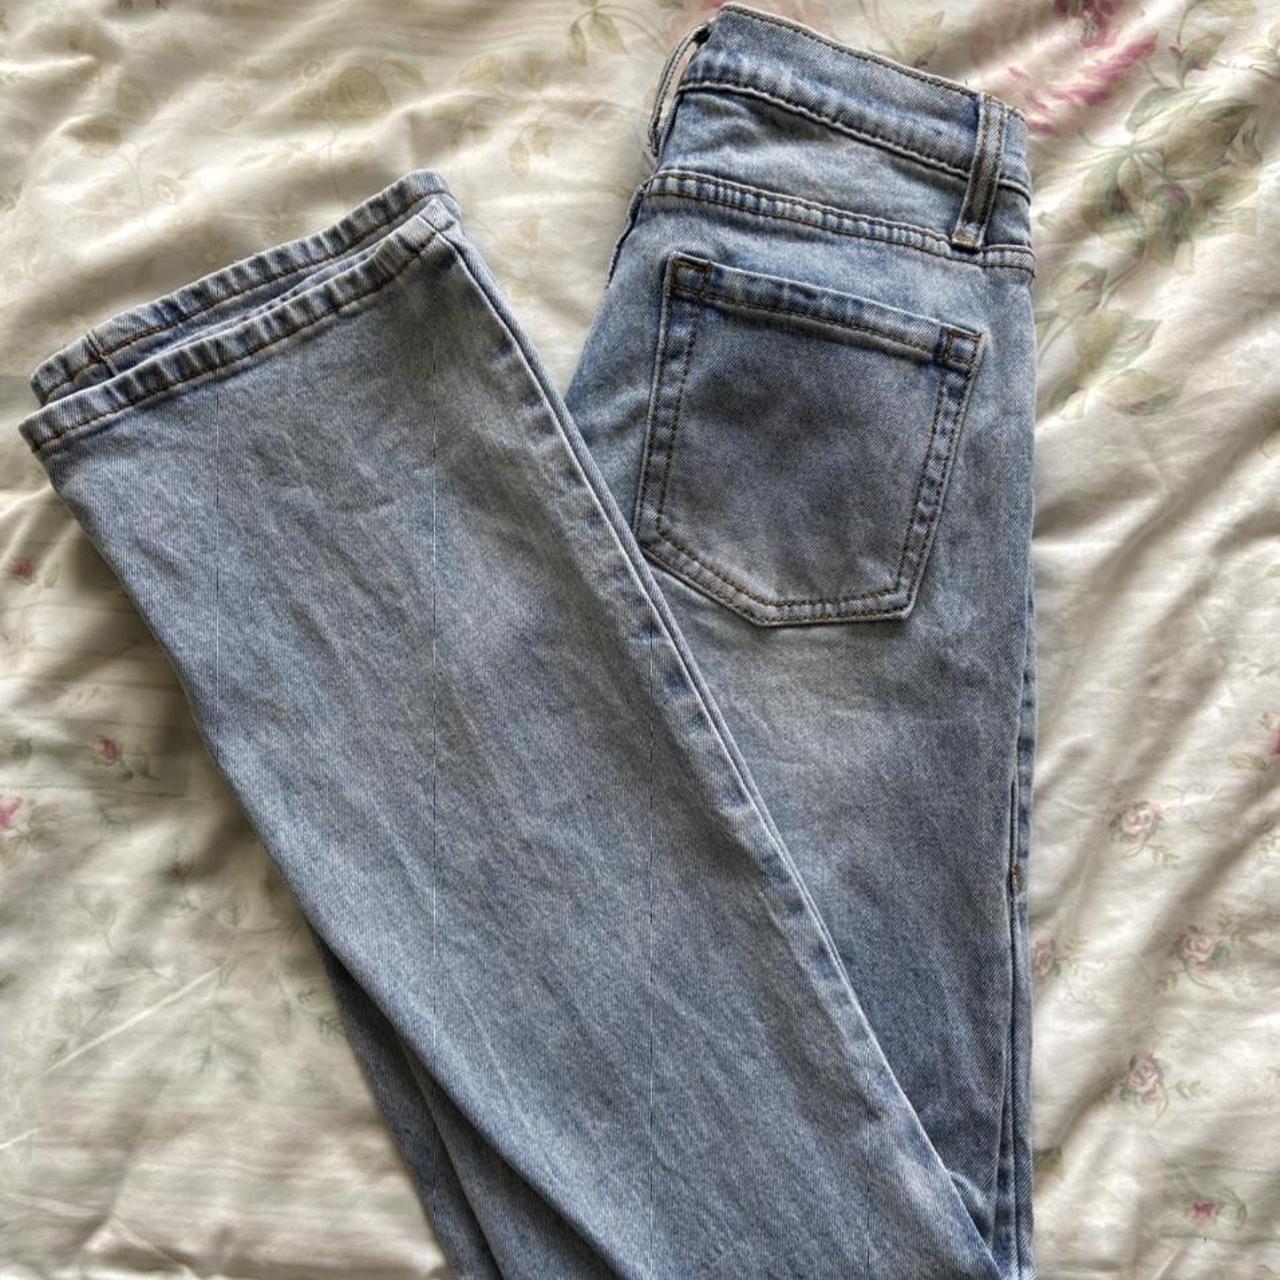 Brandy Melville low rise light wash faith jeans.... - Depop